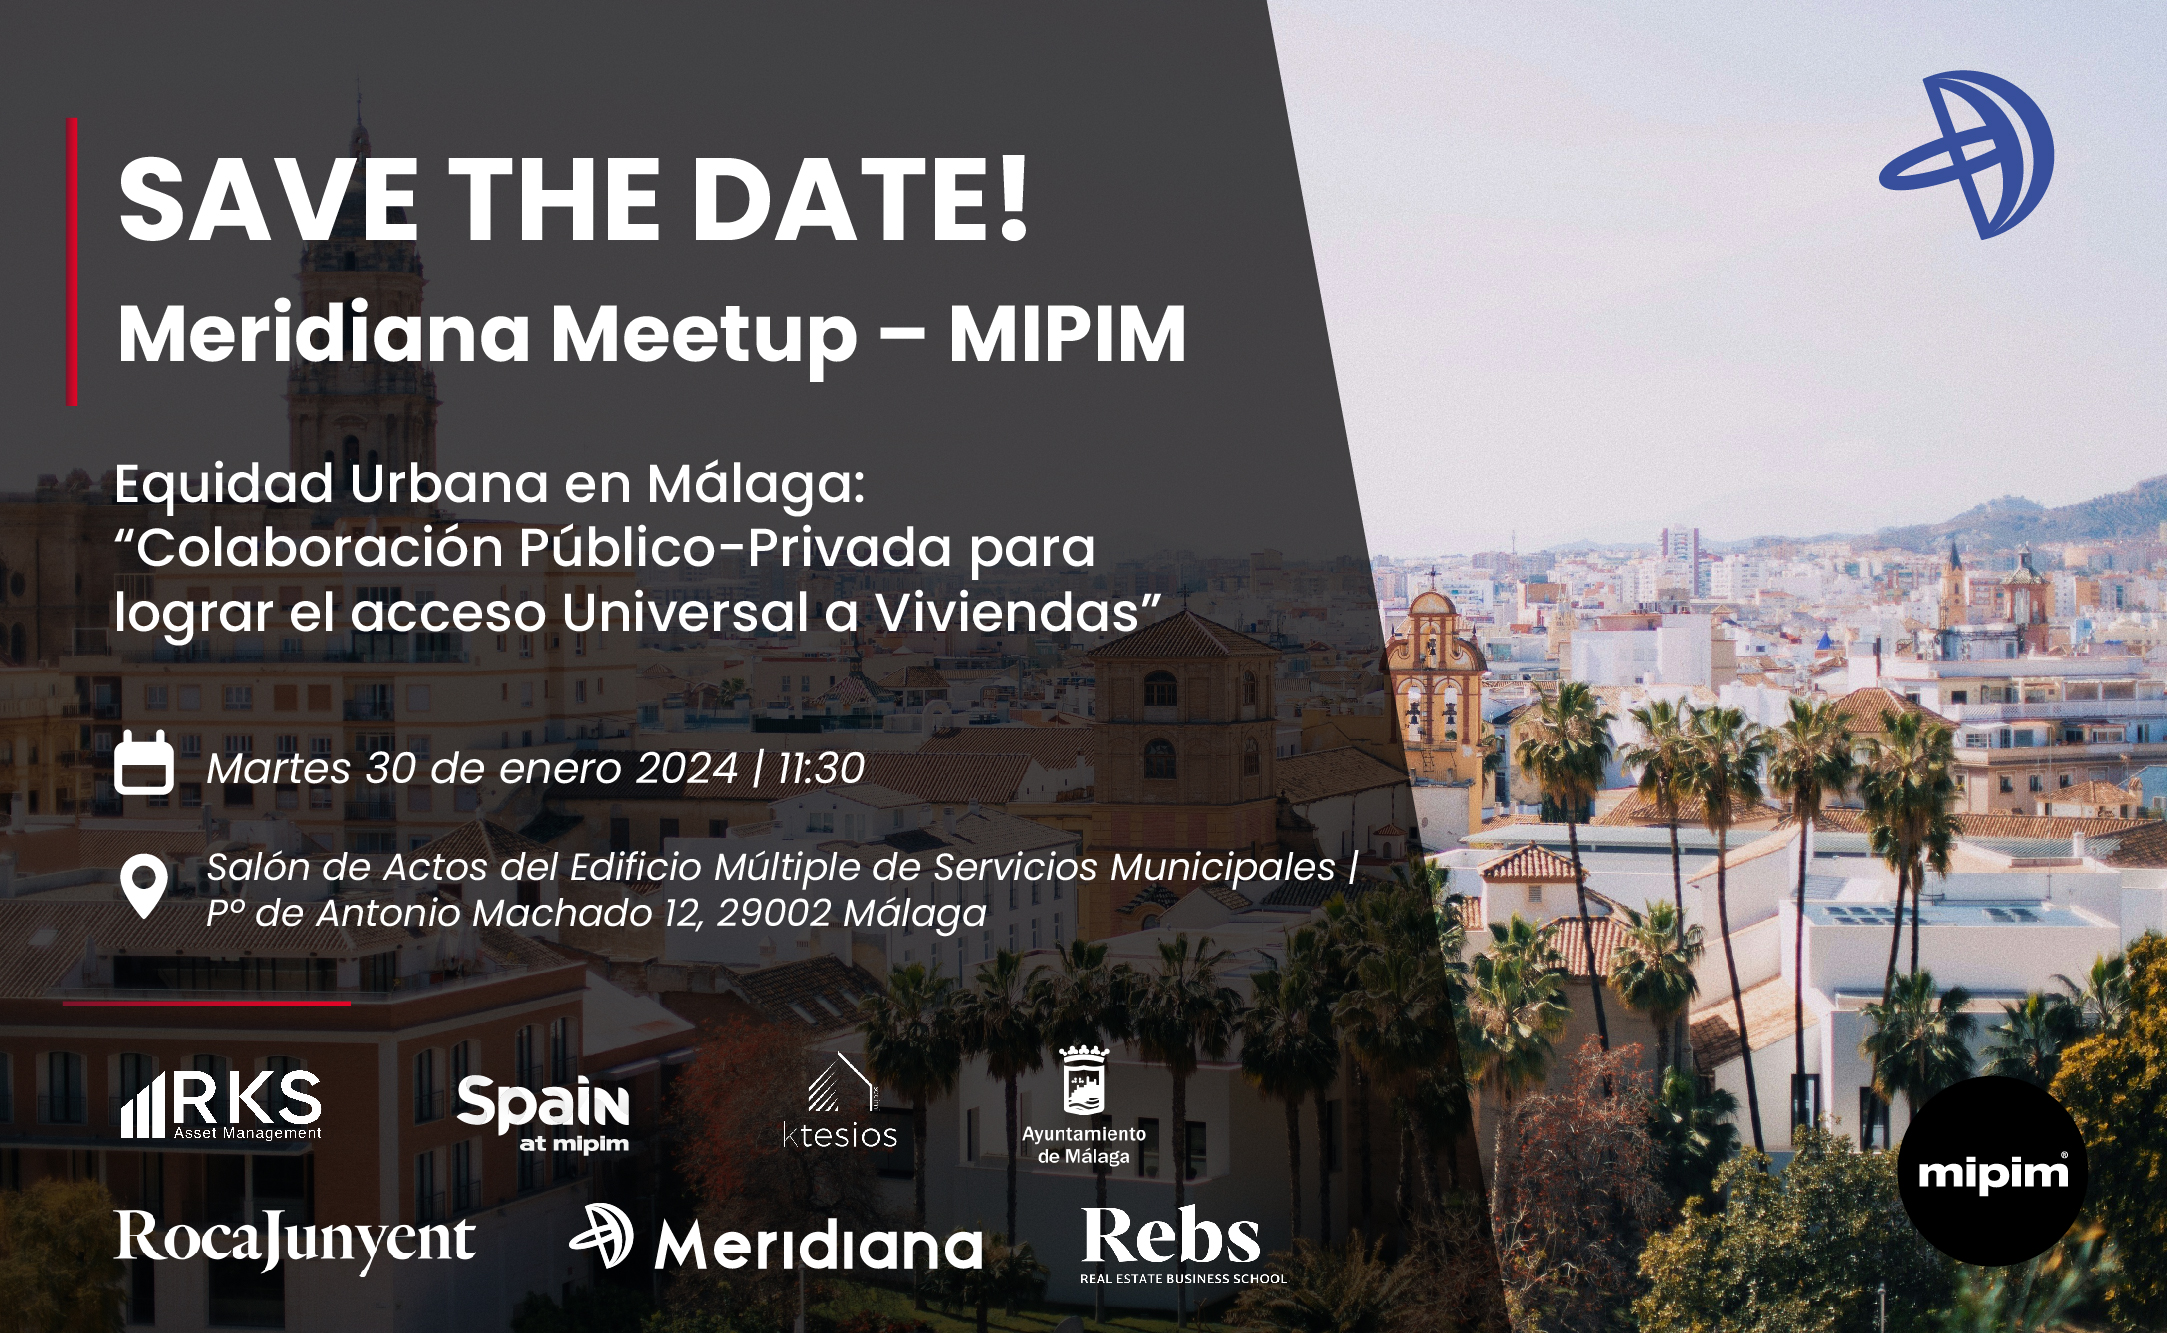 Meridiana Meetup - MIPIM | Evento sobre situación residencial de Málaga y el acceso equitativo a viviendas adecuadas